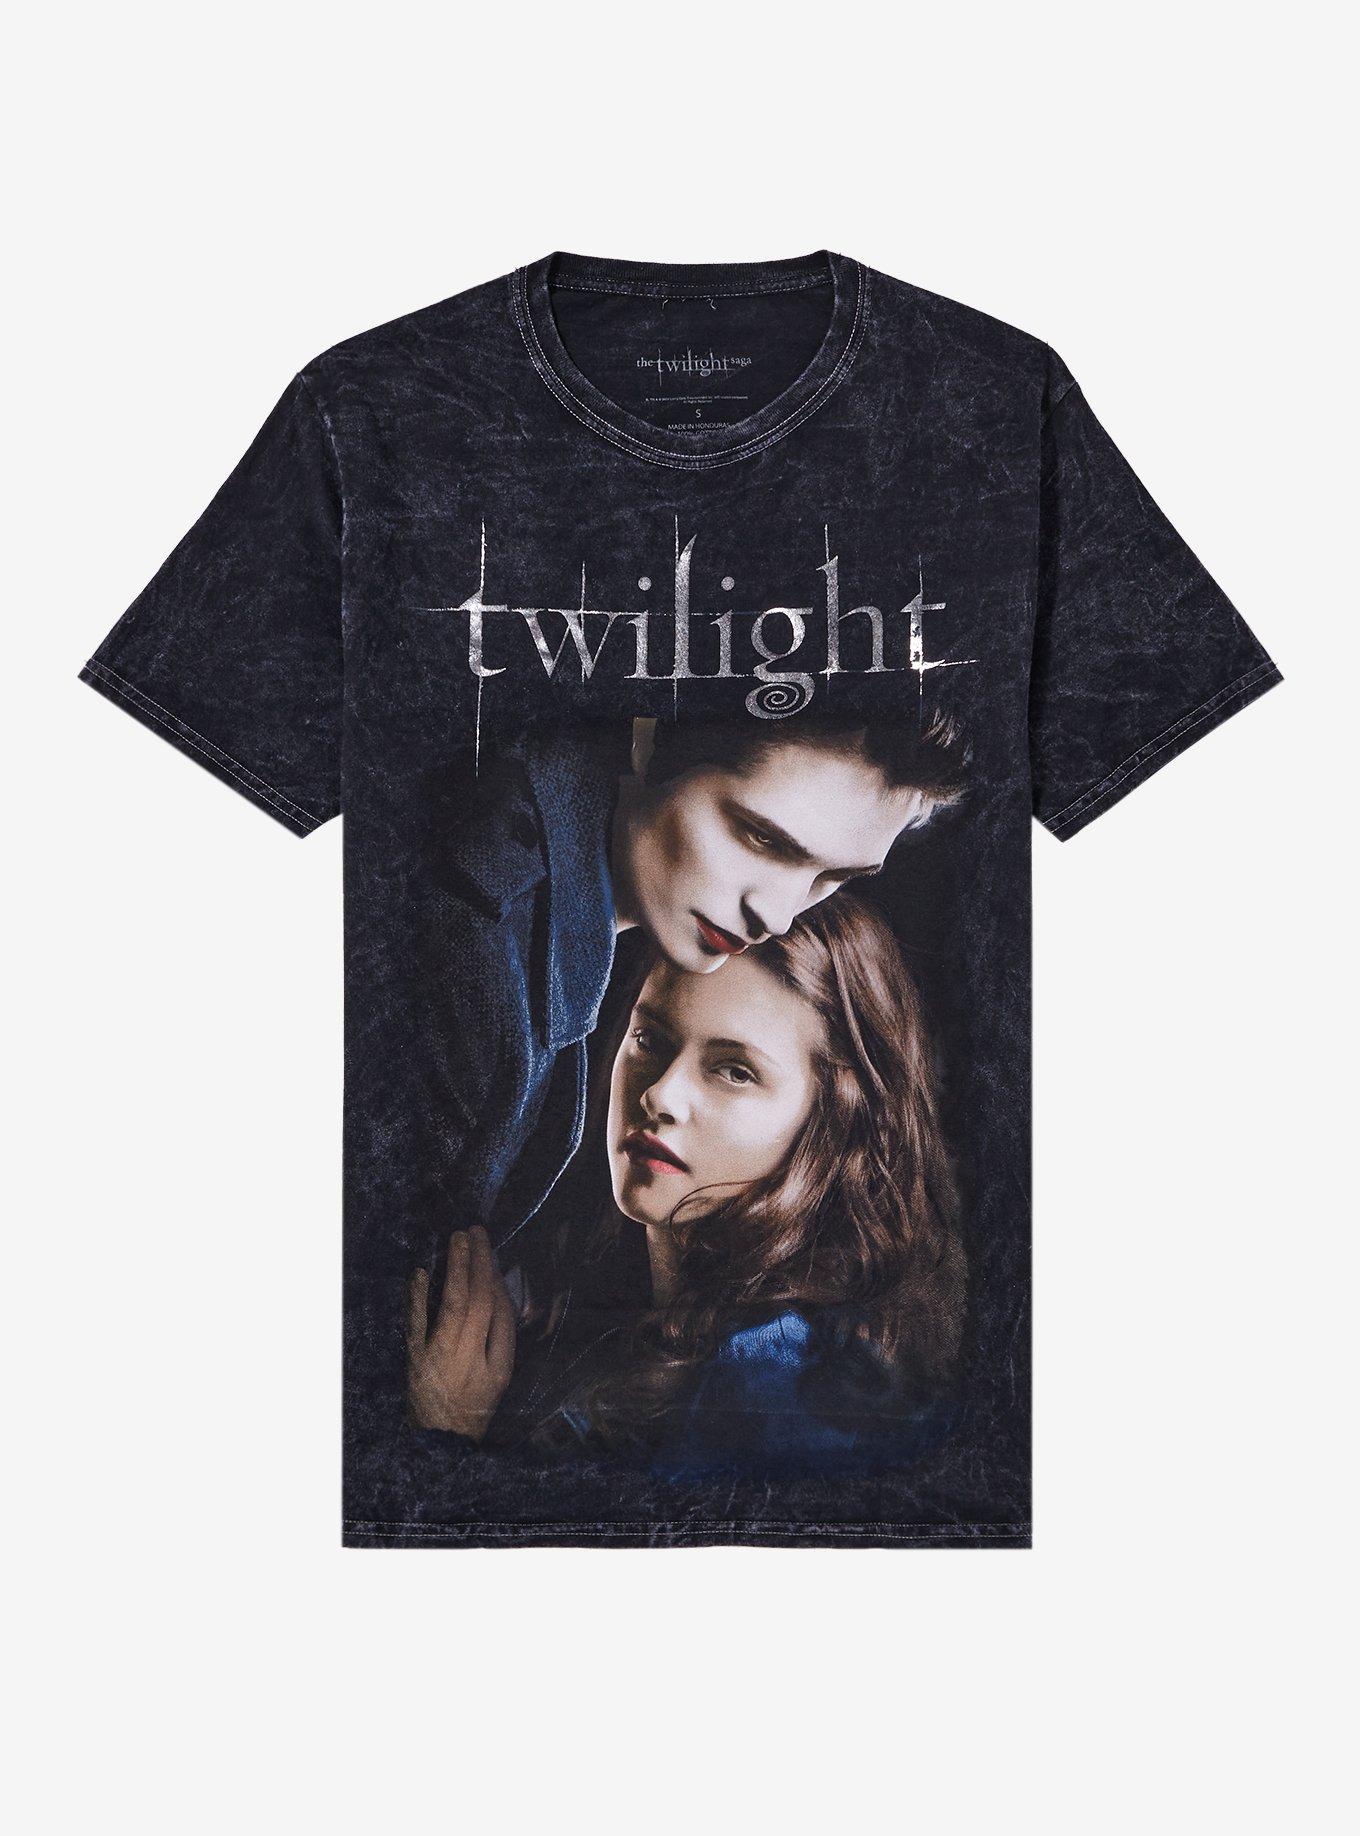 The Twilight Saga Poster Foil Print Dark Wash Boyfriend Fit Girls T ...